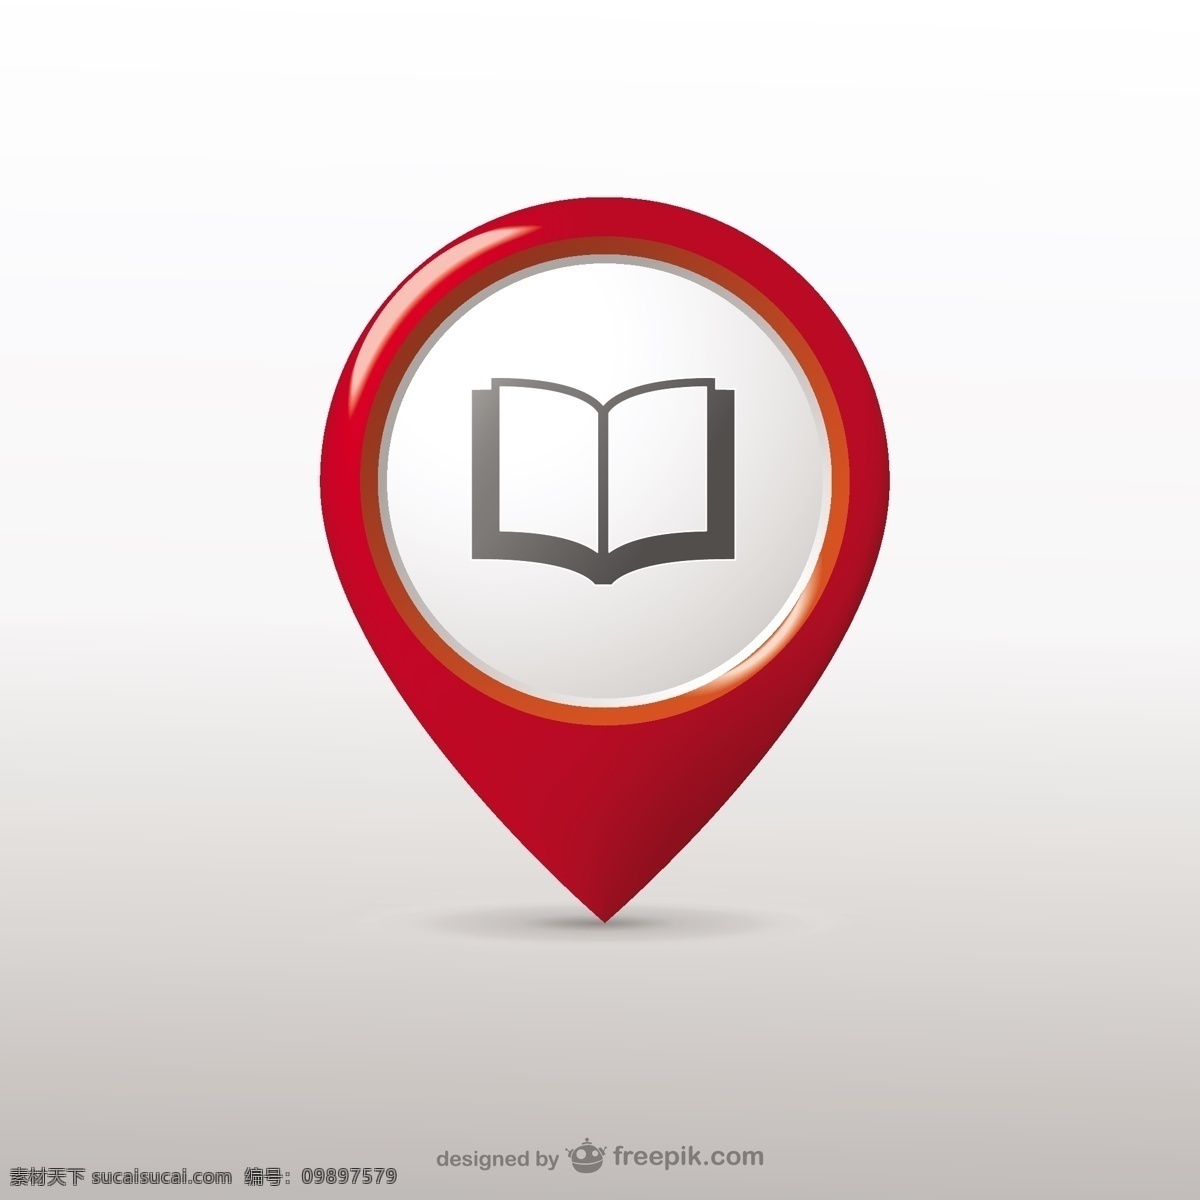 图书馆 位置 图标 书籍 教育 大学 图书图标 指针 教育图标 书店 白色